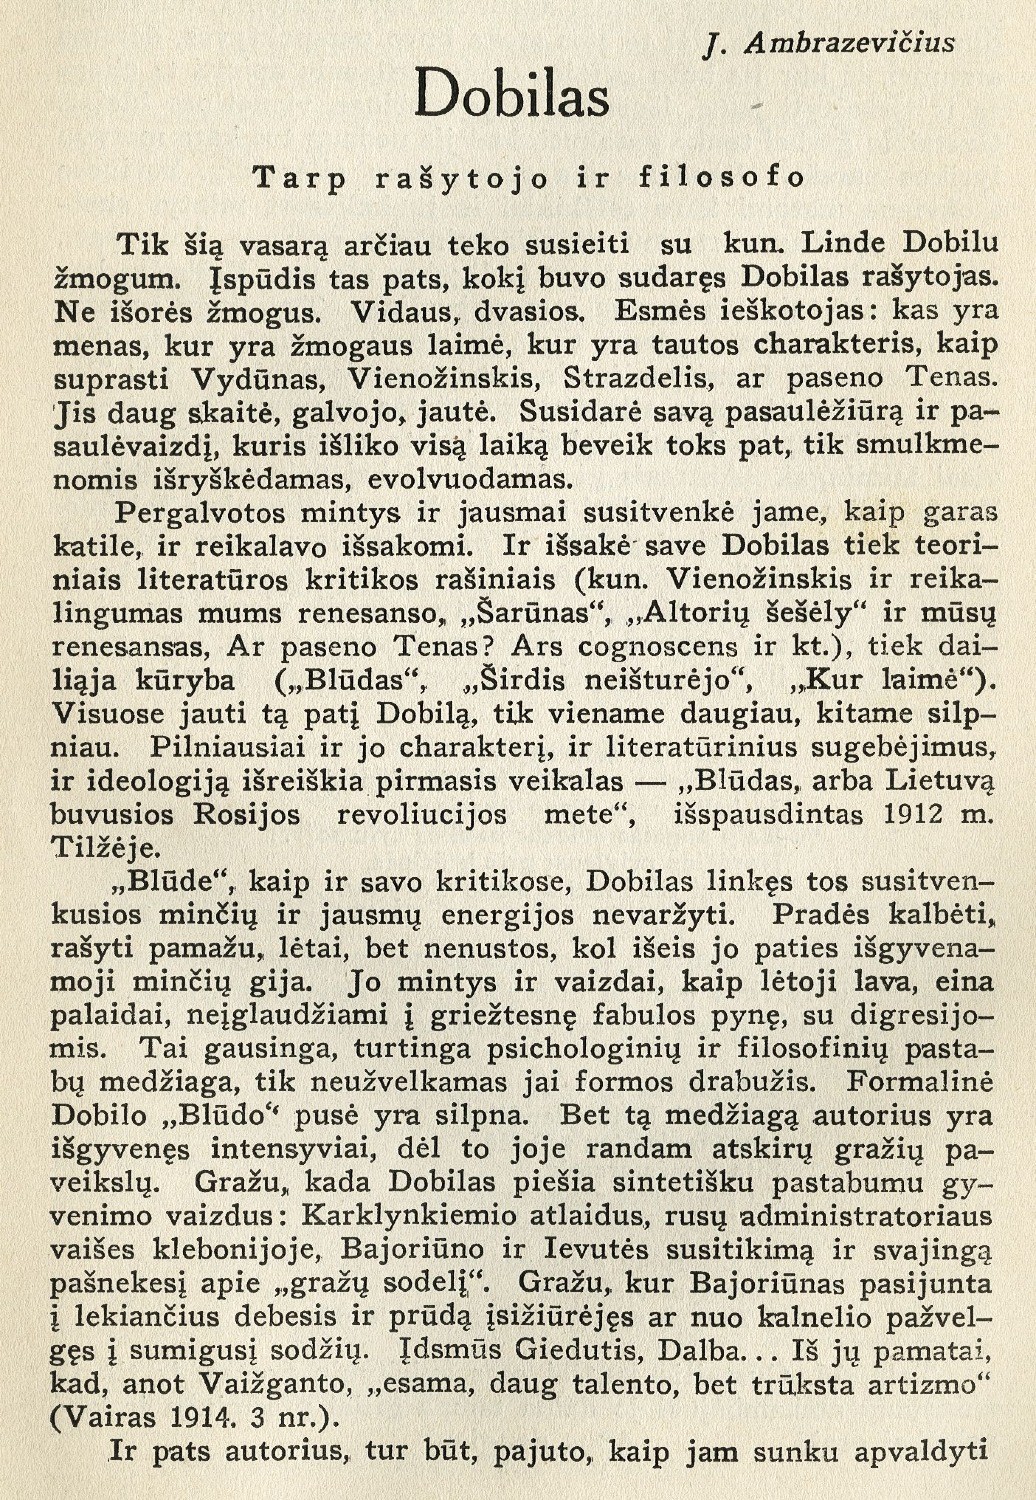 Dobilas: Tarp rašytojo ir filosofo / J. Ambrazevičius // Židinys. – 1934, Nr. 12, p. 520–526.